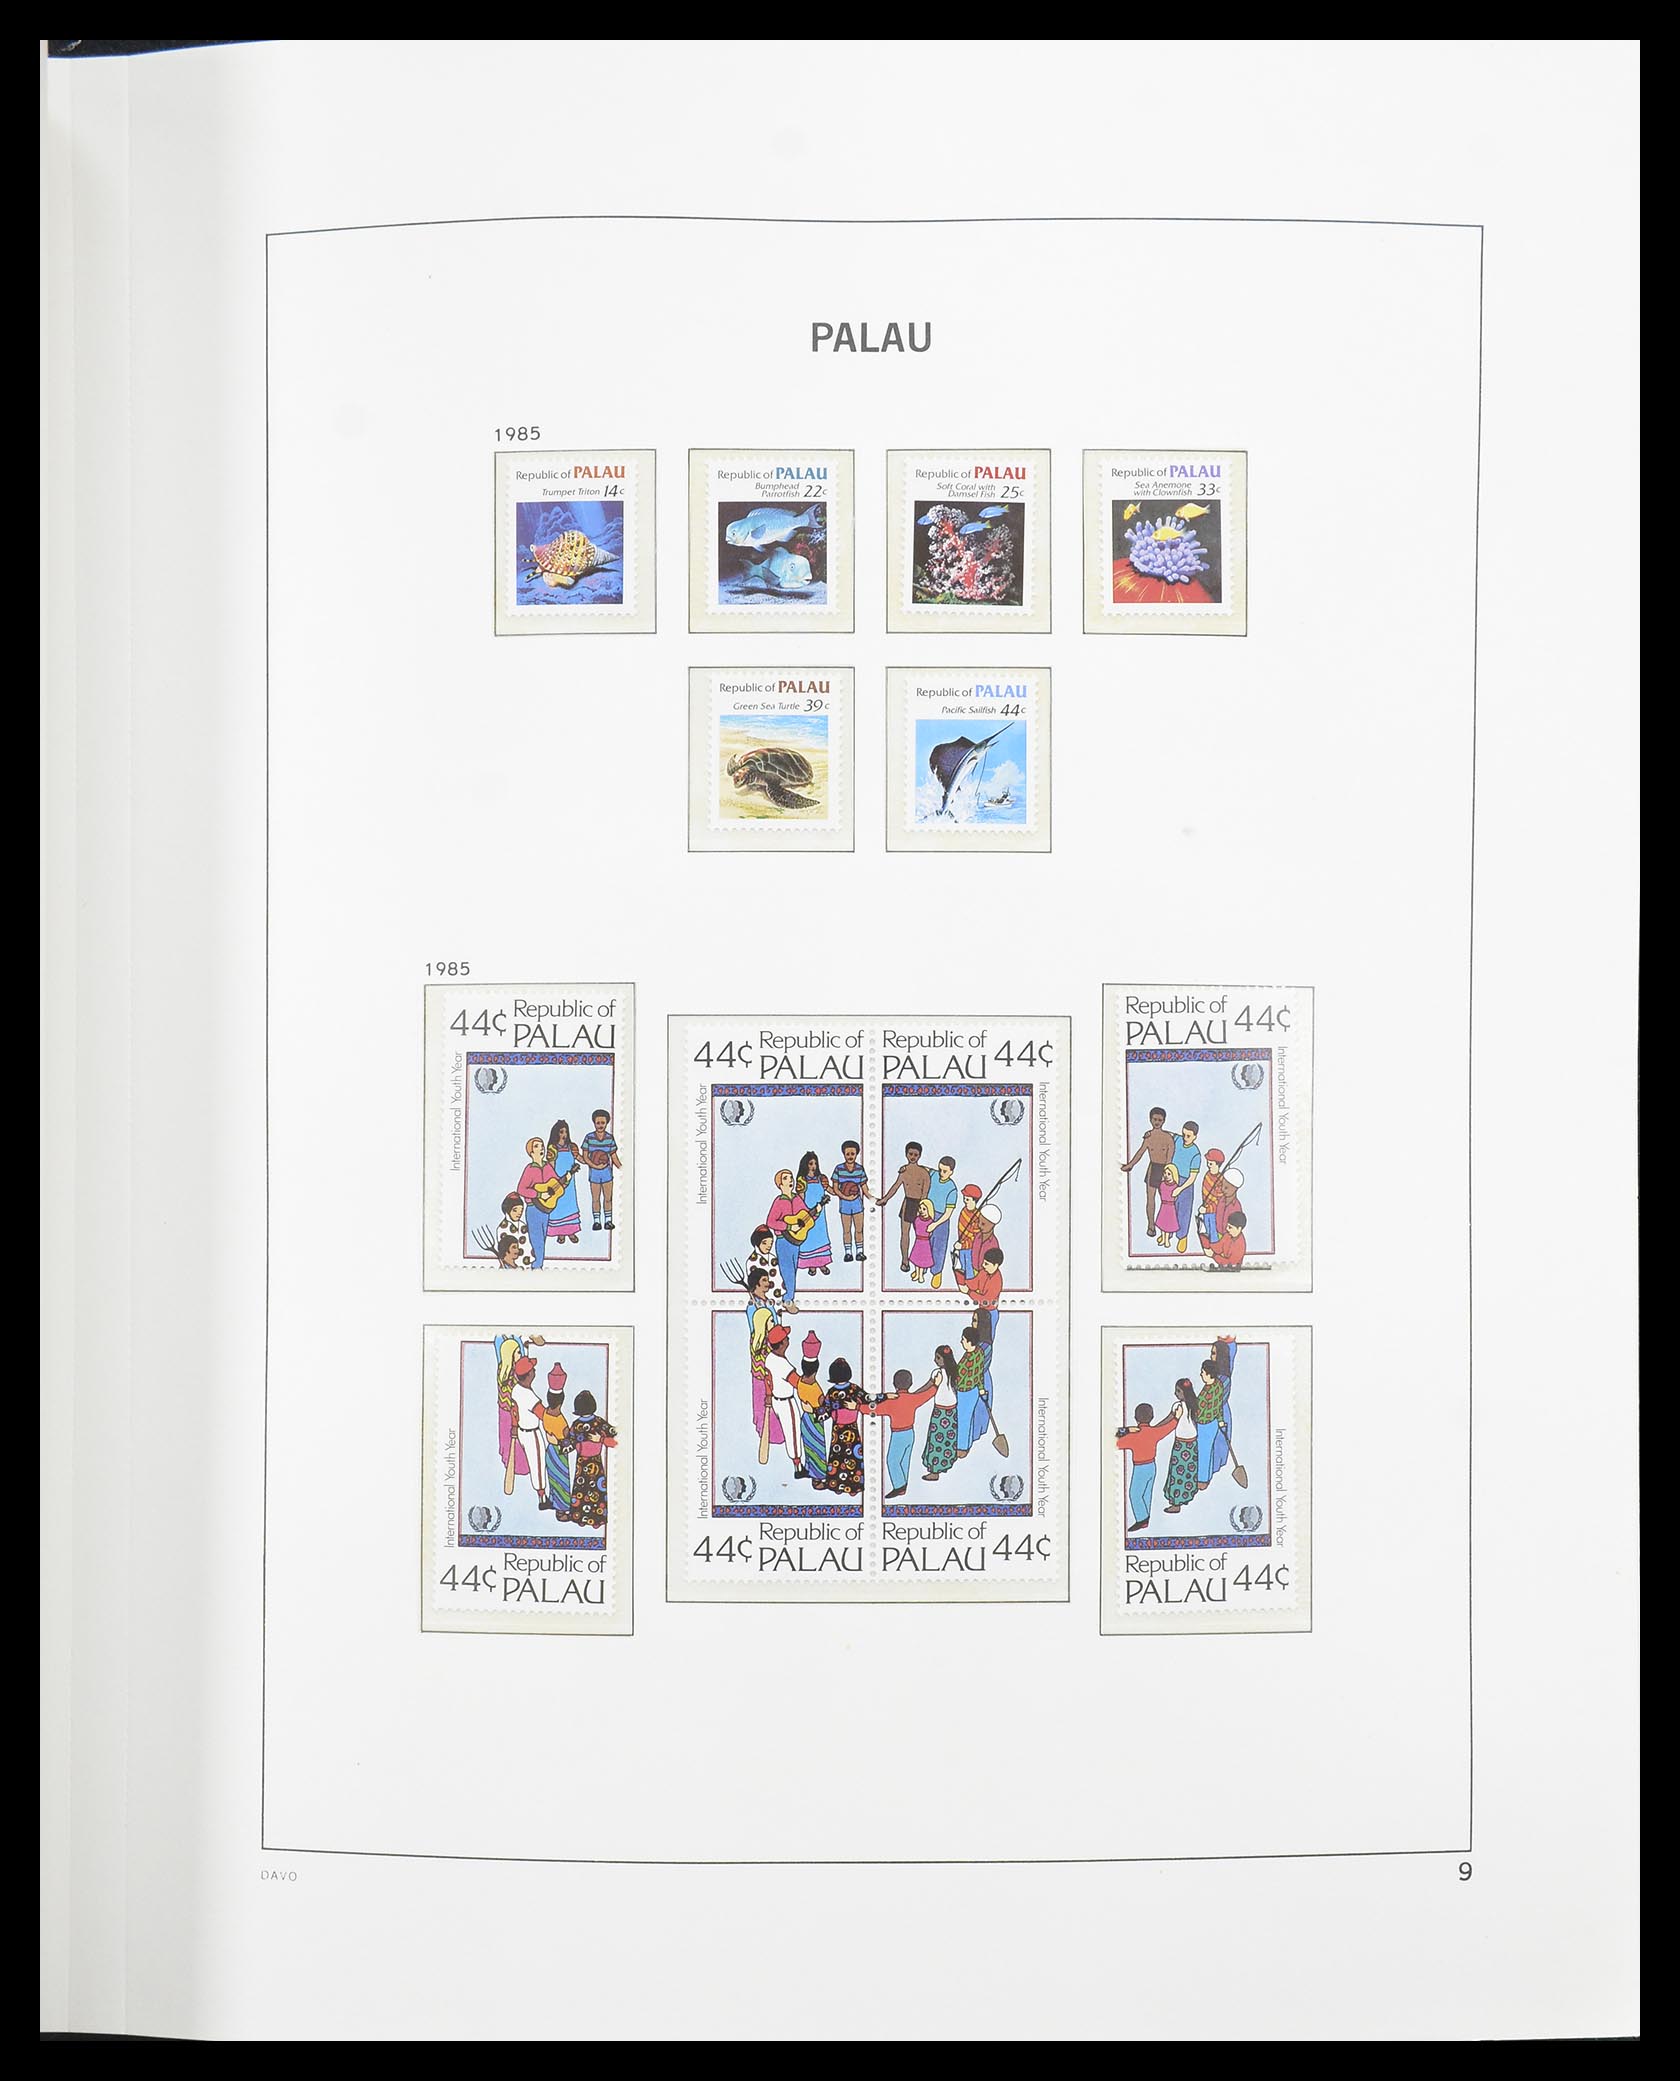 31380 011 - 31380 Palau 1983-2008.